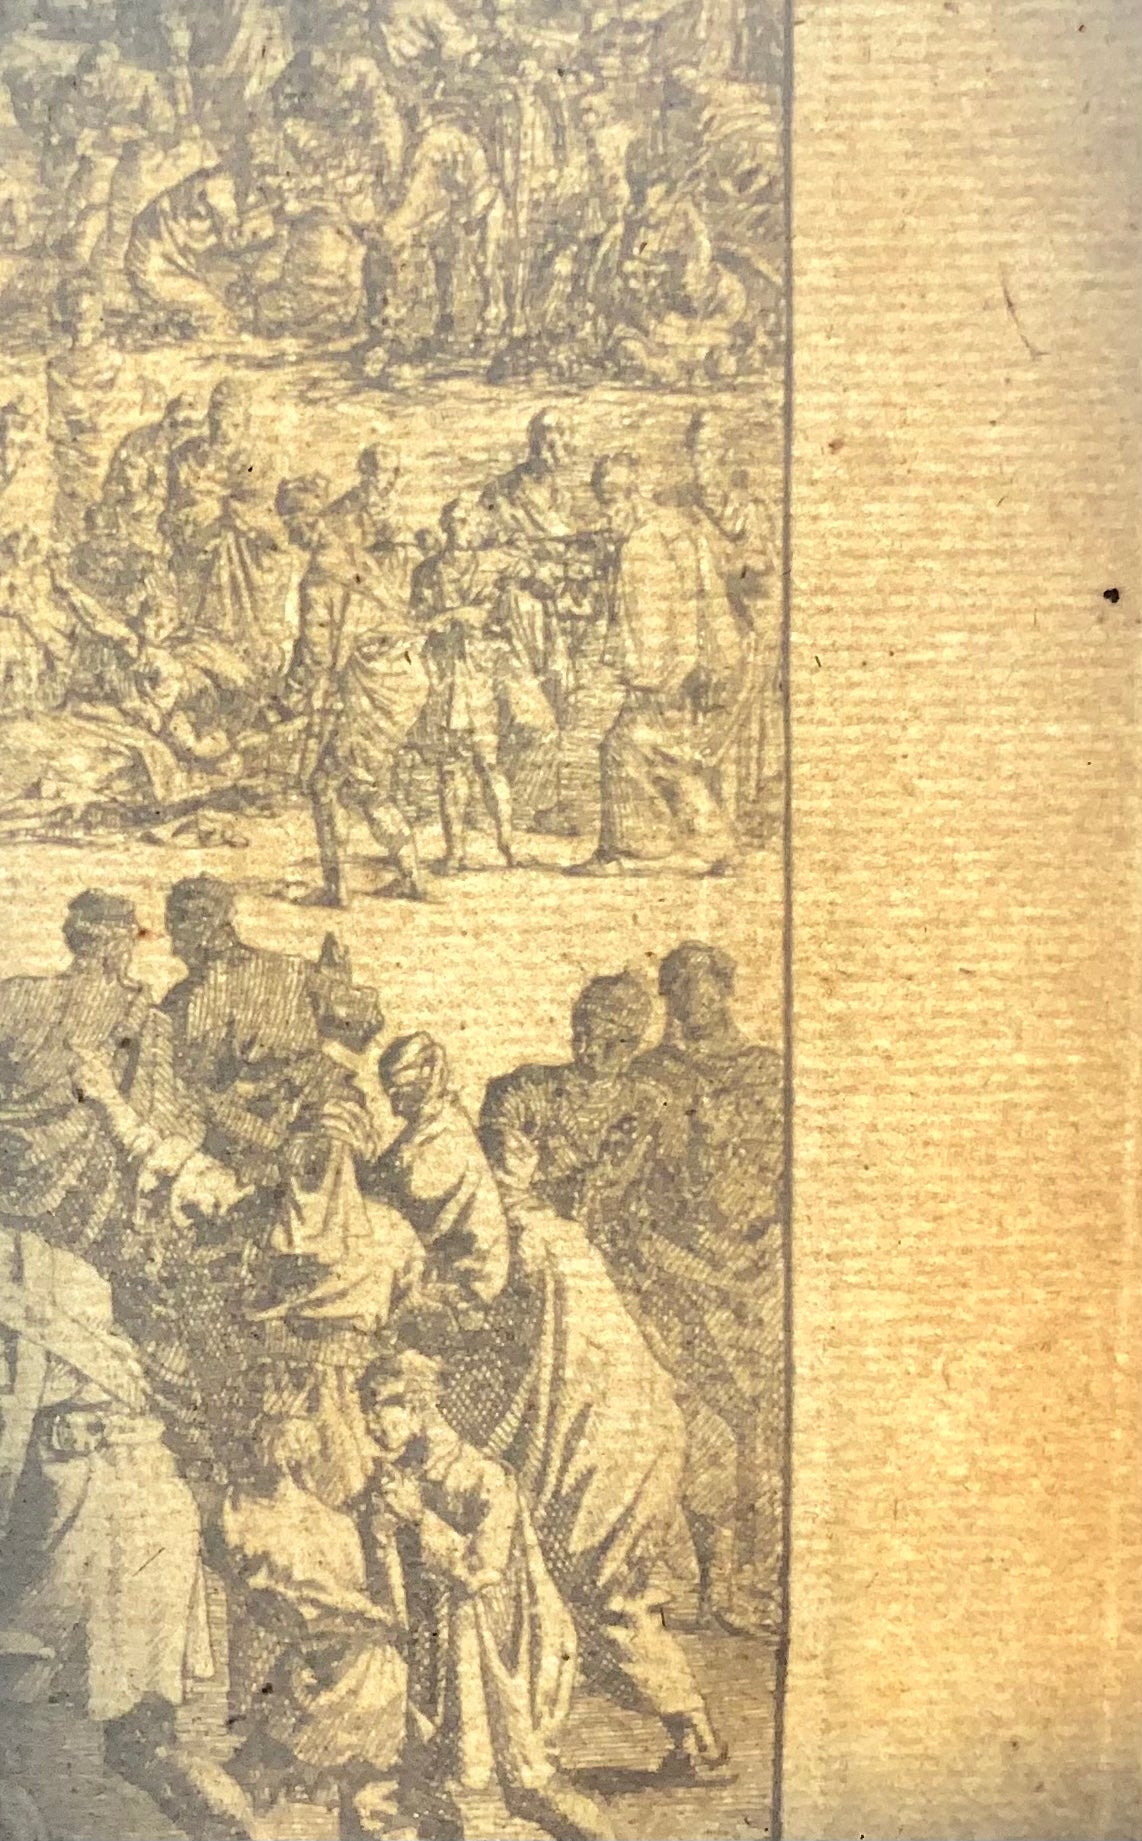 1708 Cristo guarisce i malati, Joh. Luyken, Bibbia, grande foglio a doppia pagina 52,8 cm